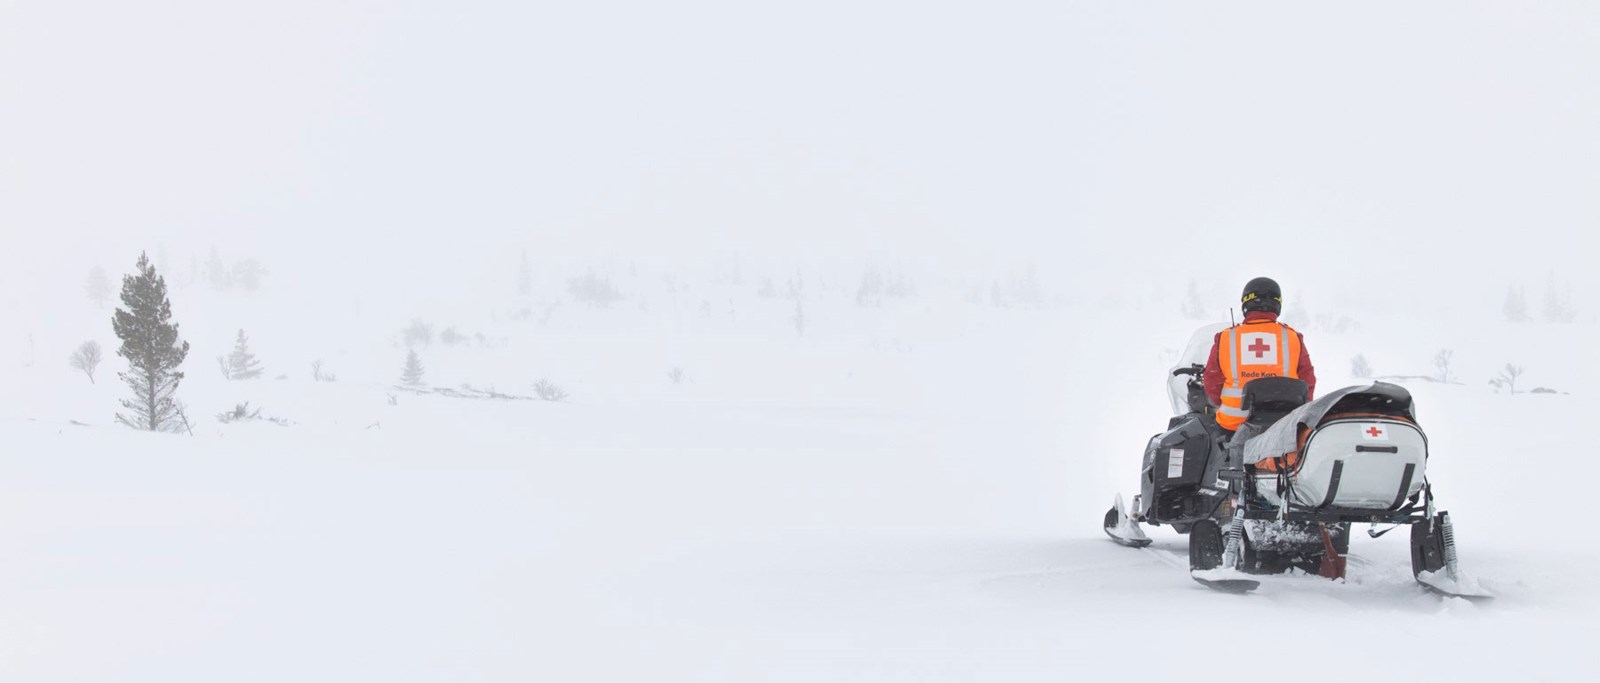 Røde Kors mannskap i snøvær som sitter på en snøscooter